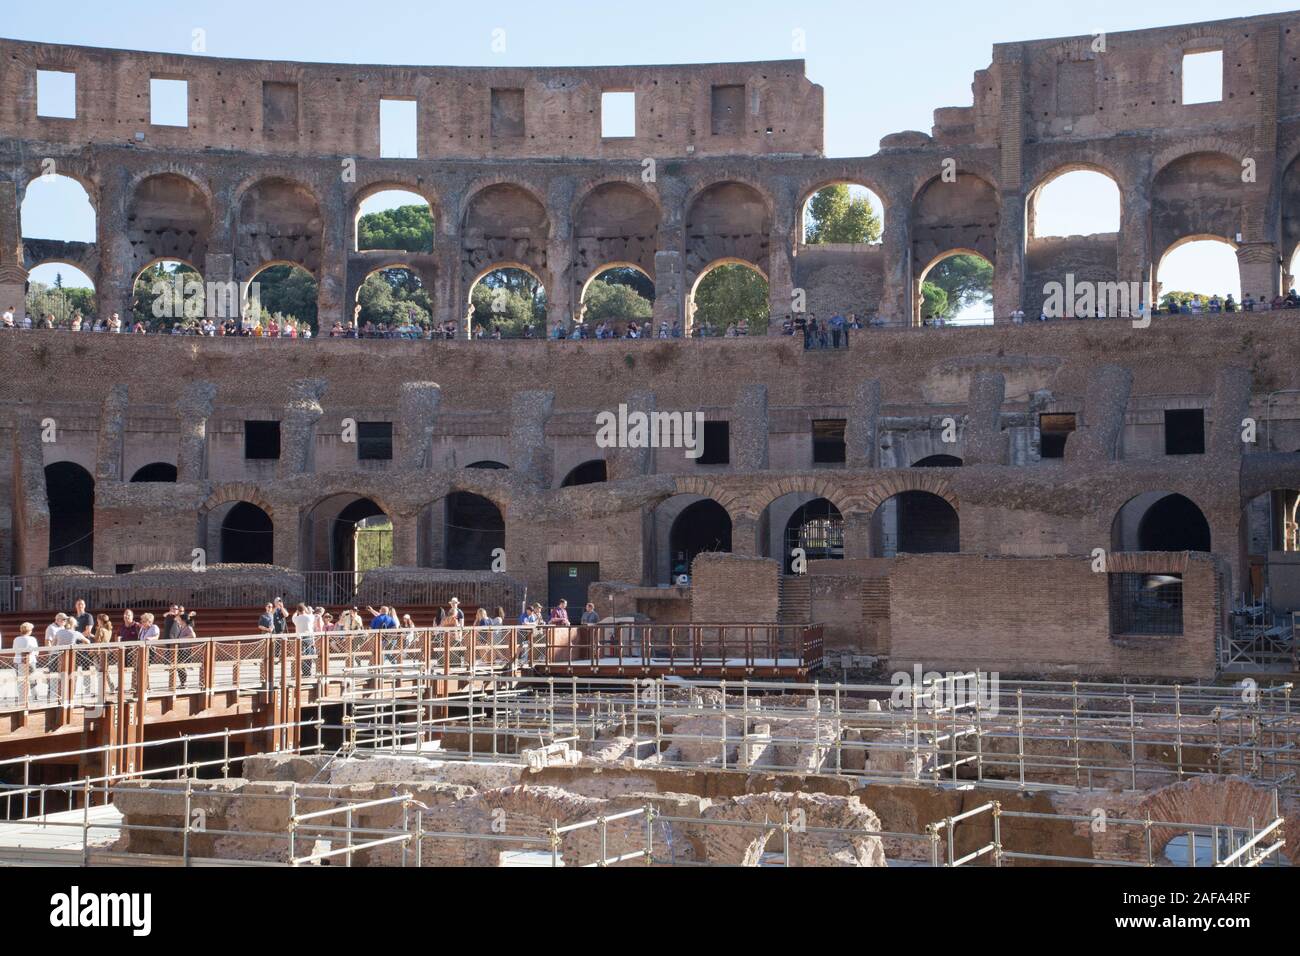 L'intérieur du Colisée ou le Colisée de Rome montrant les travaux de rénovation et de restauration Banque D'Images